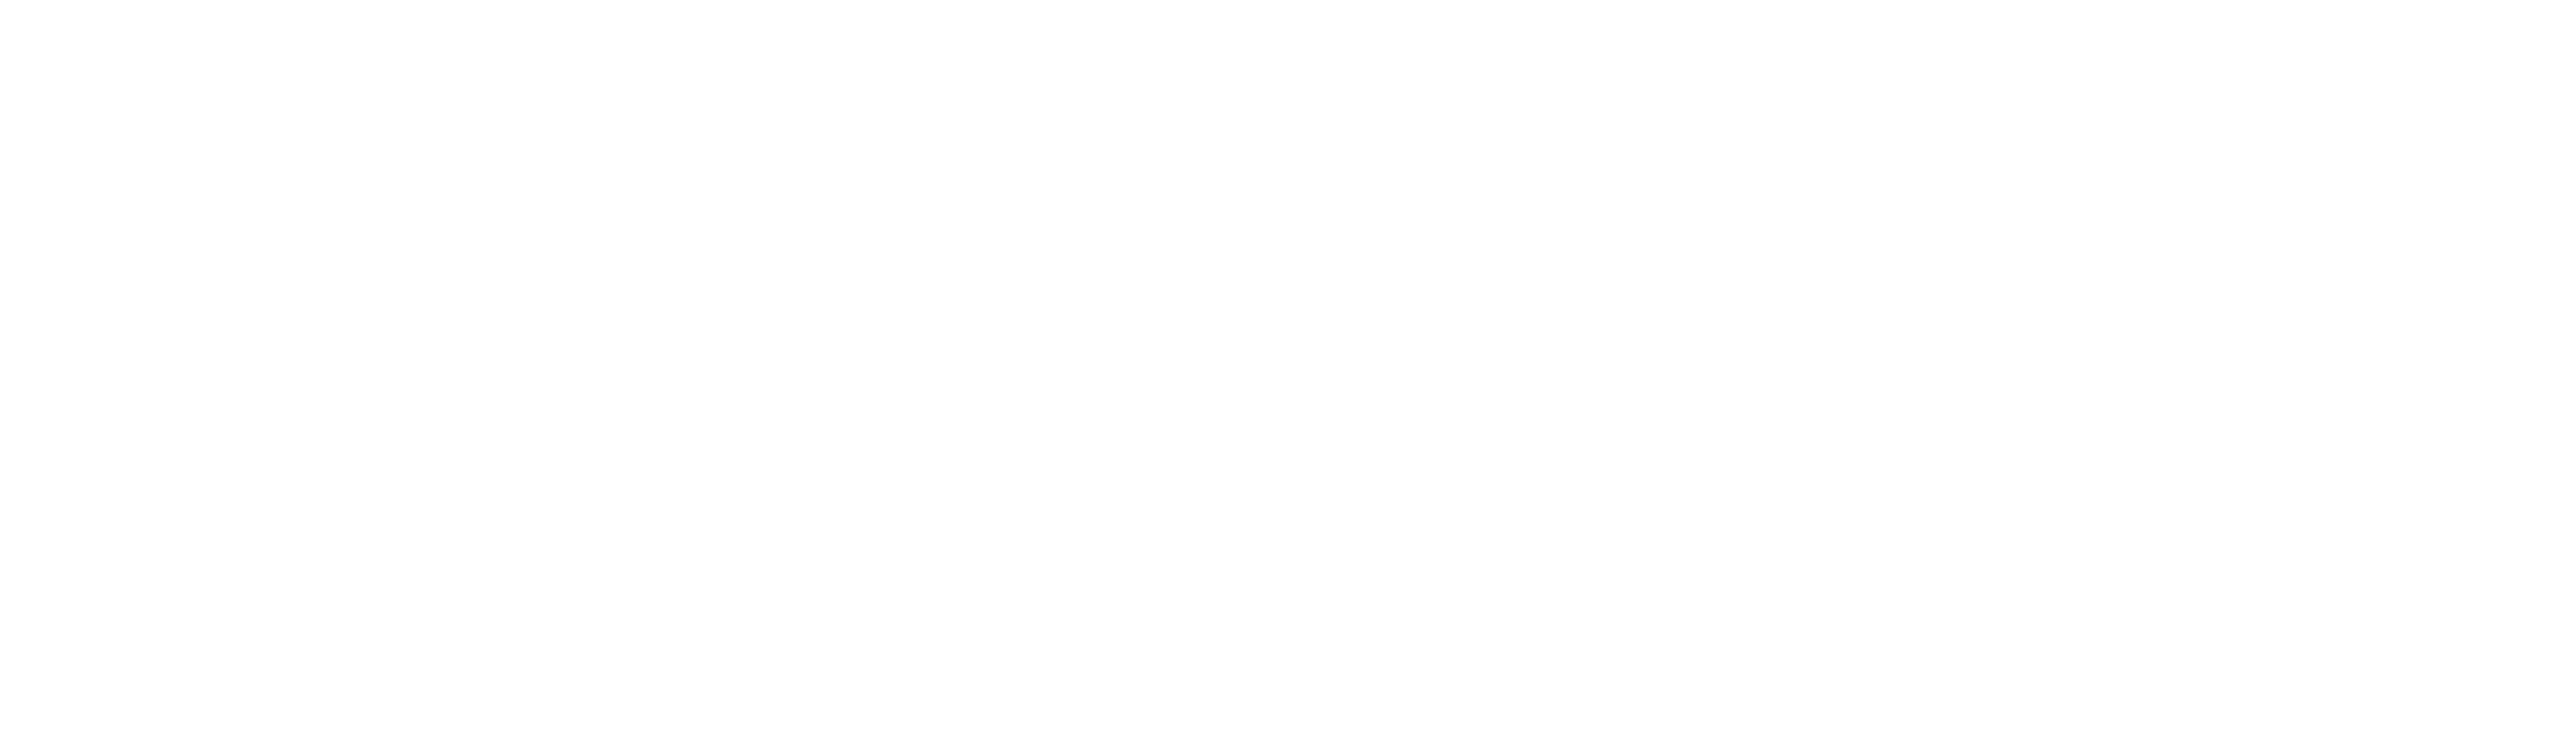 TrueLight white logo